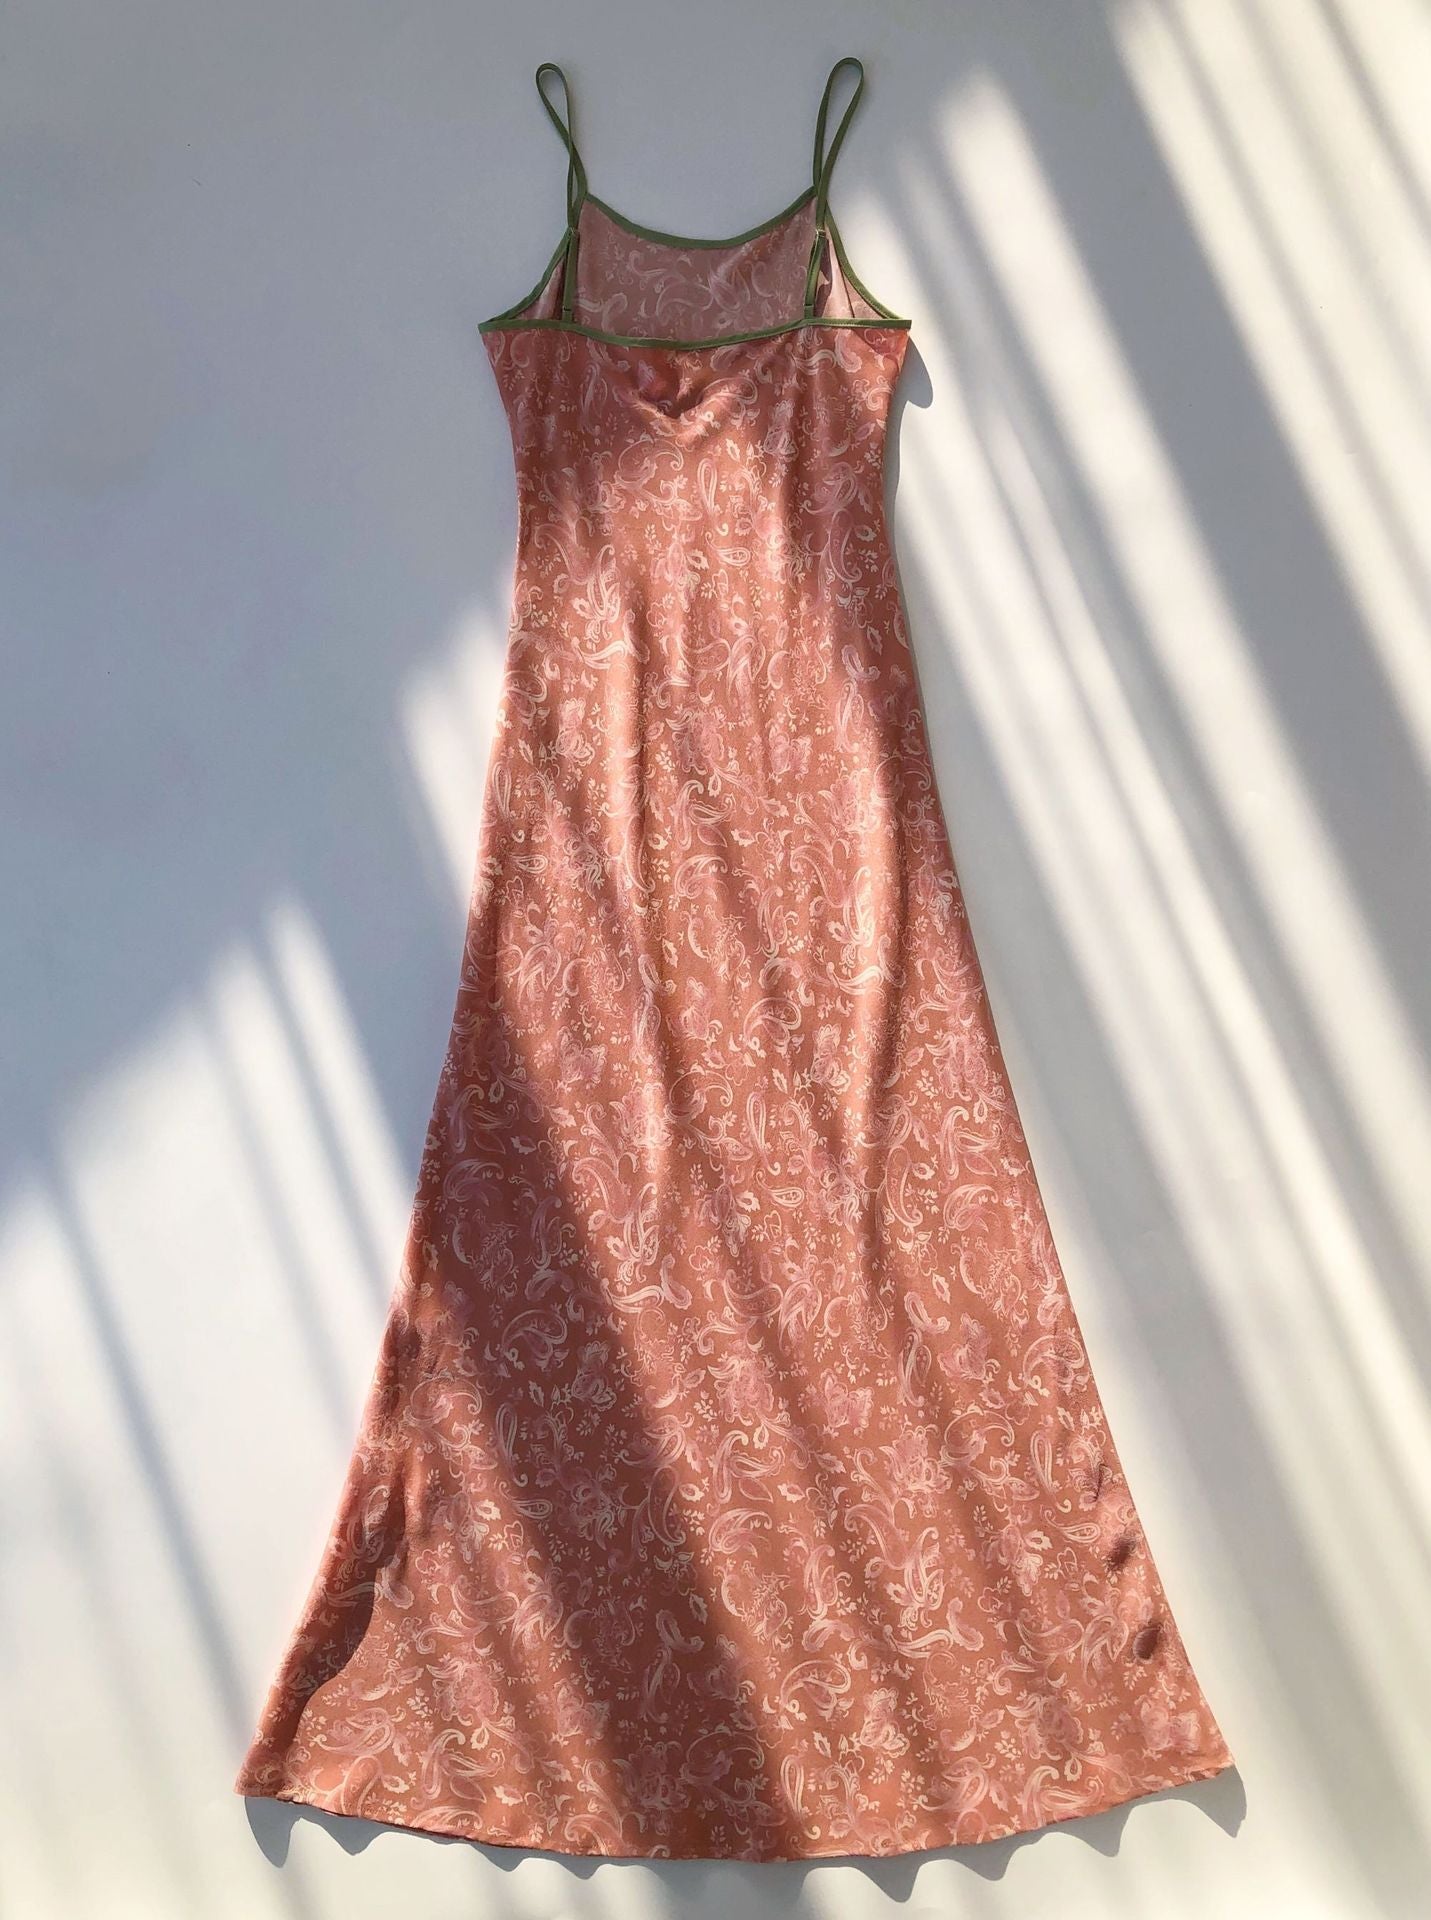 Mulberry silk dress